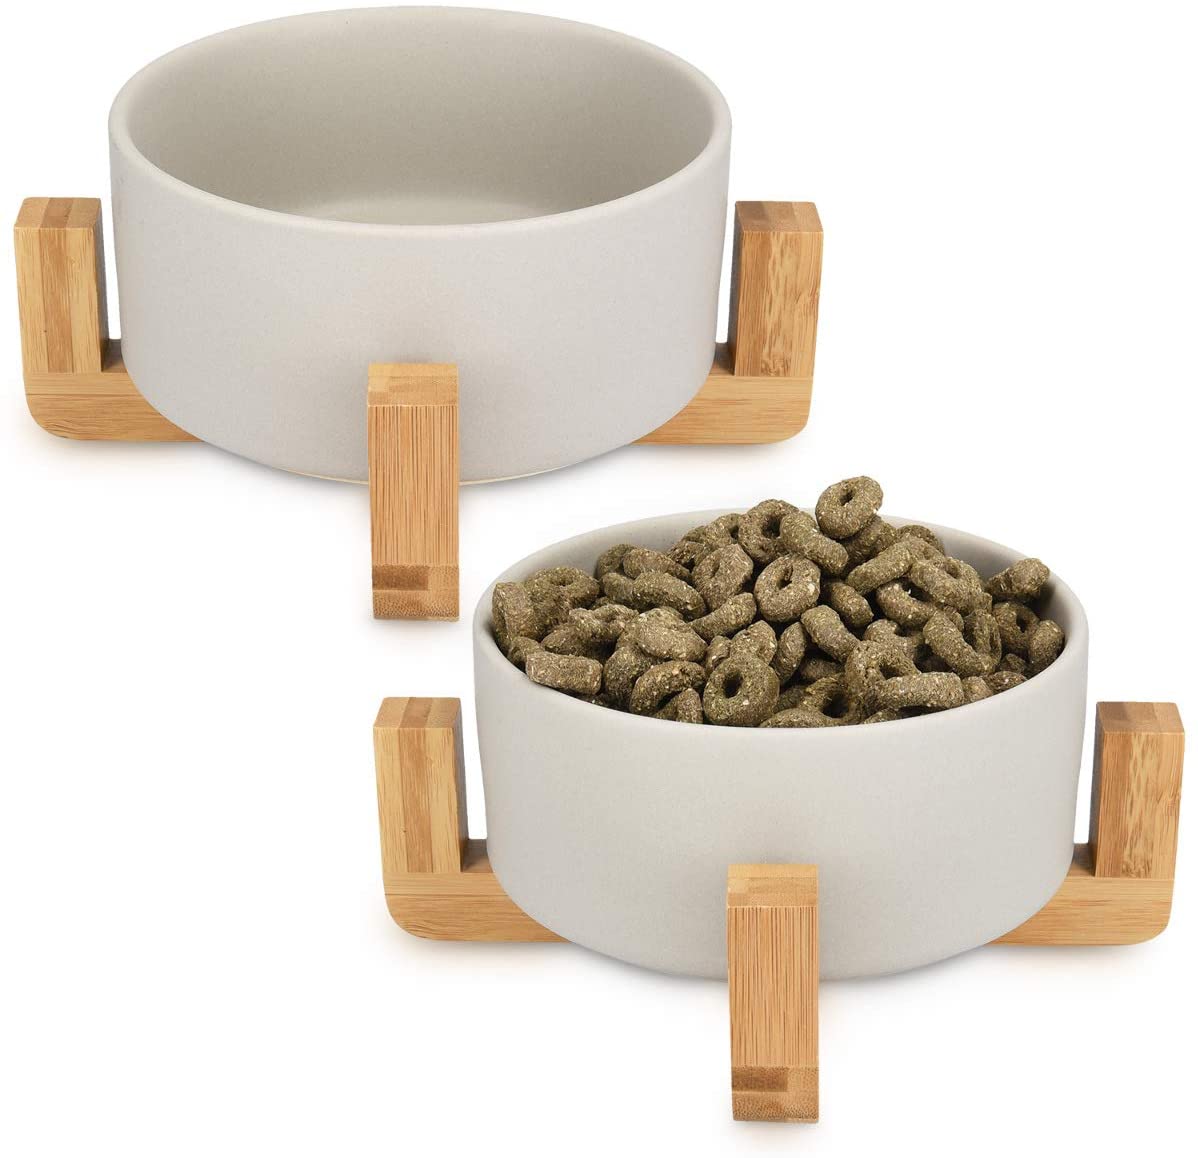  Navaris 2X Cuencos elevados para Mascotas - Comedero y Bebedero de cerámica para Perros Gatos Cachorros - con Soportes de bambú Antideslizante - en Gris 